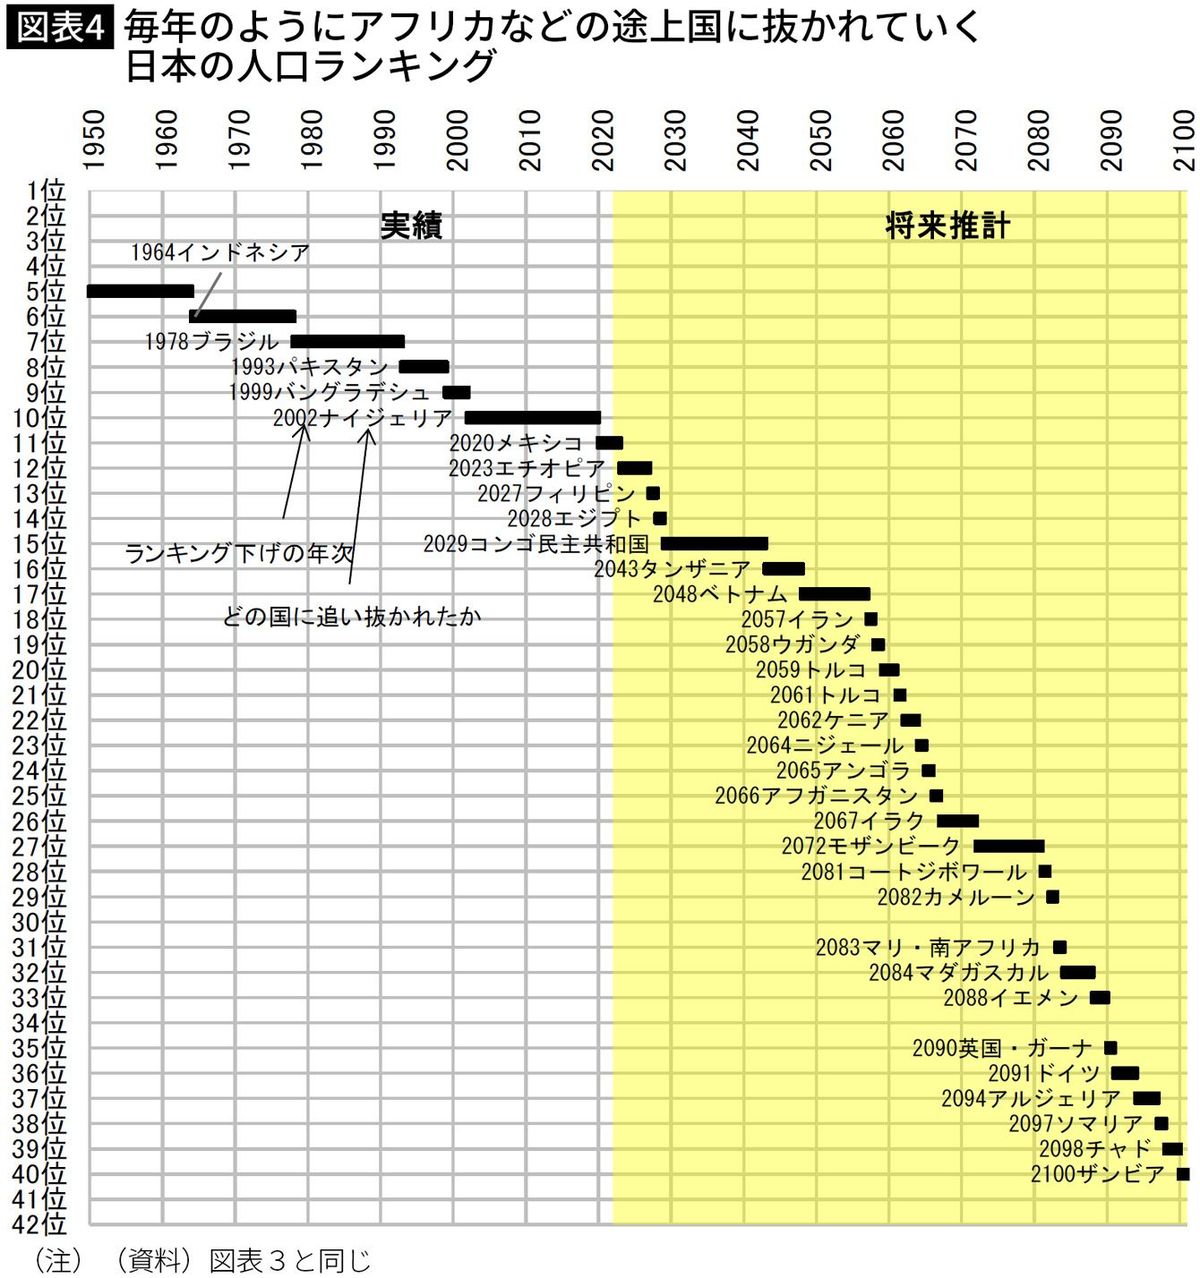 【図表】毎年のようにアフリカなどの途上国に抜かれていく 日本の人口ランキング